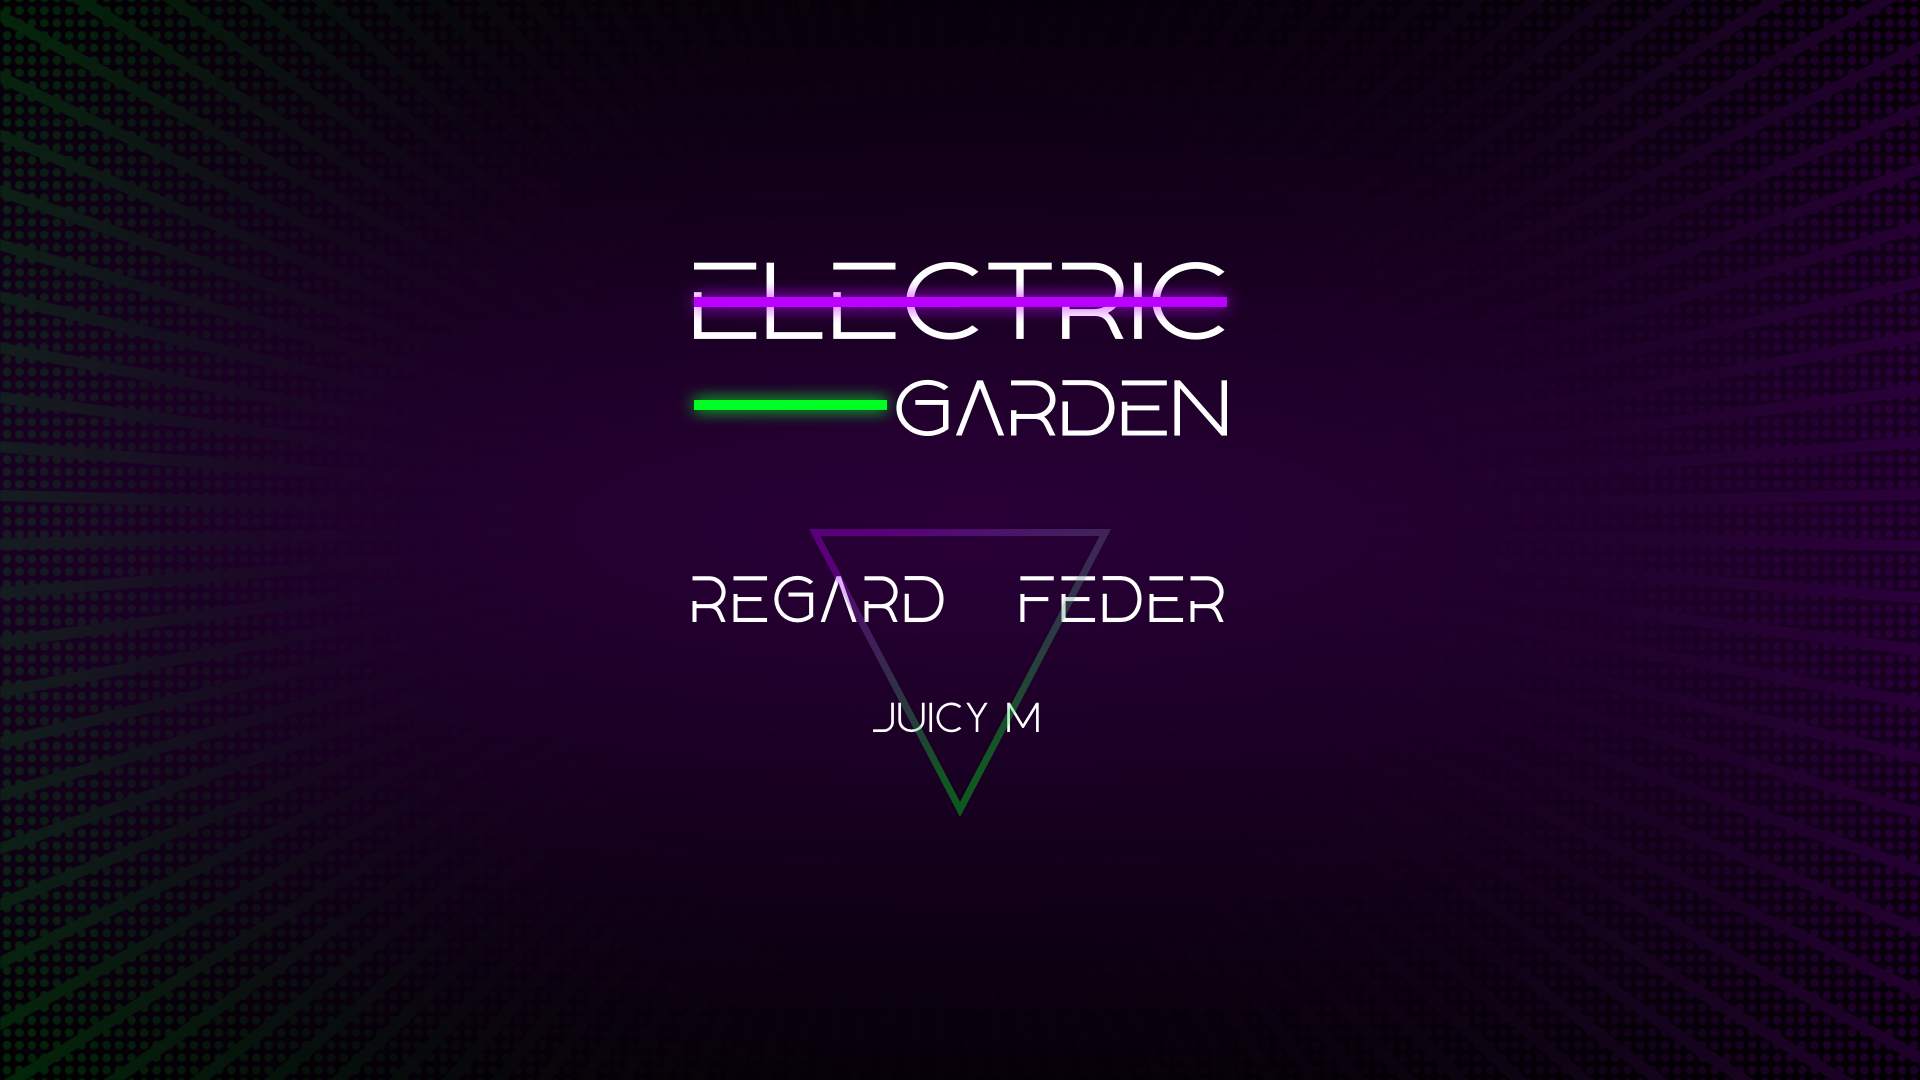 Electric Garden: Regard - Feder - Juicy M - フライヤー表